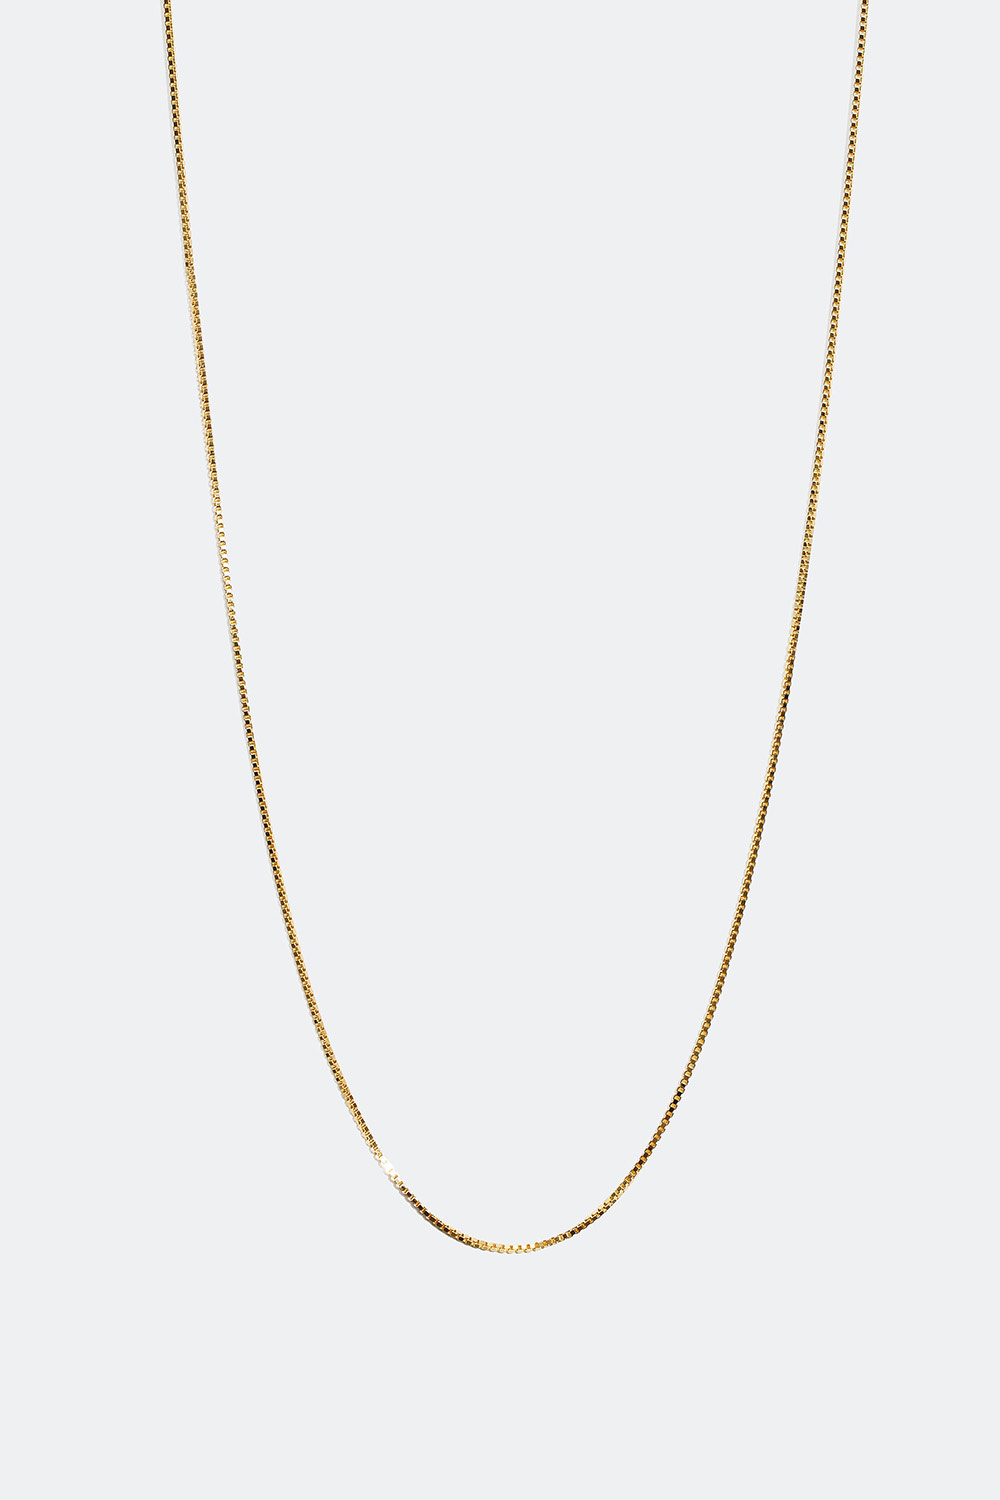 Venetiansk halskedja förgylld med 18 karat guld, 55 cm